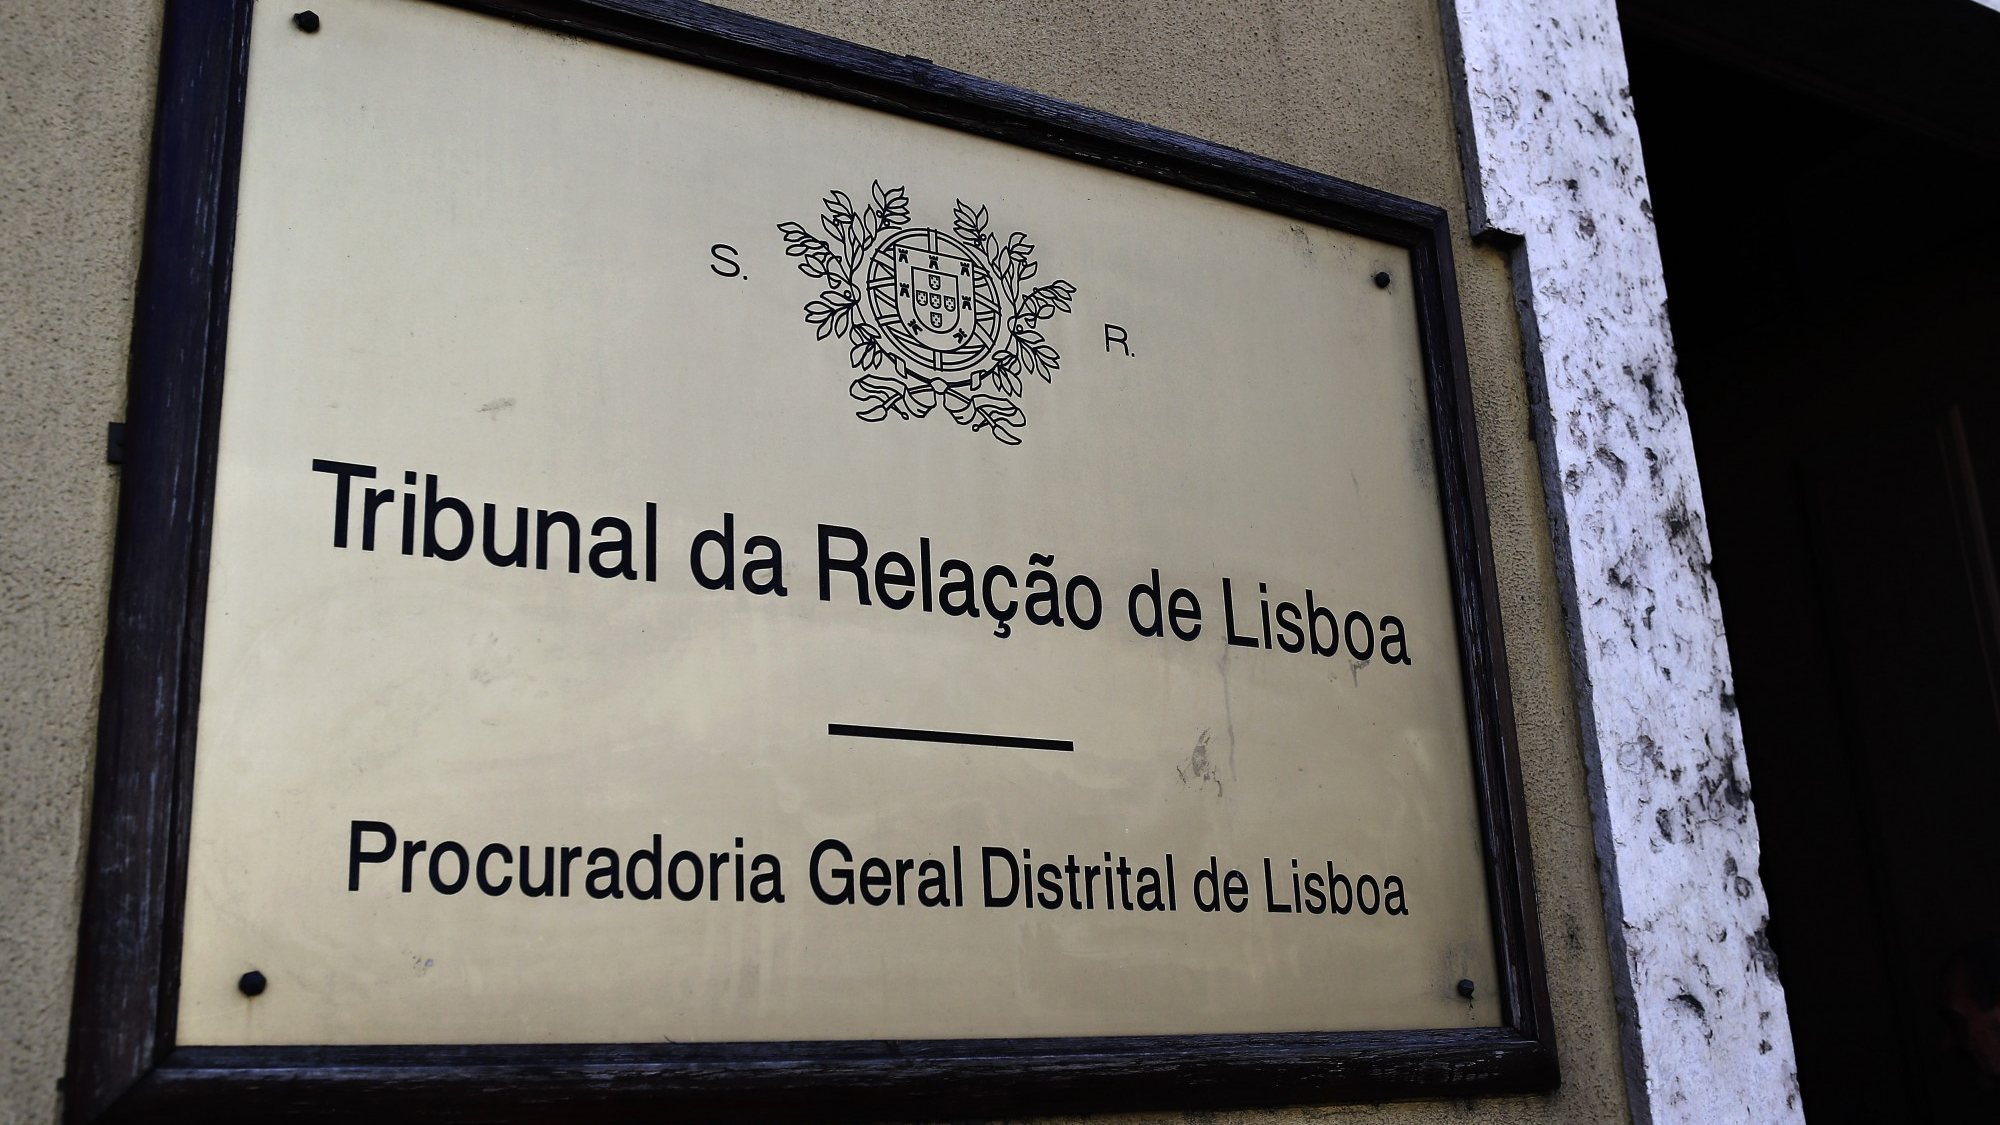 O homem tinha sido condenado a pagar uma multa pela Comarca de Lisboa, mas o Tribunal da Relação discordou